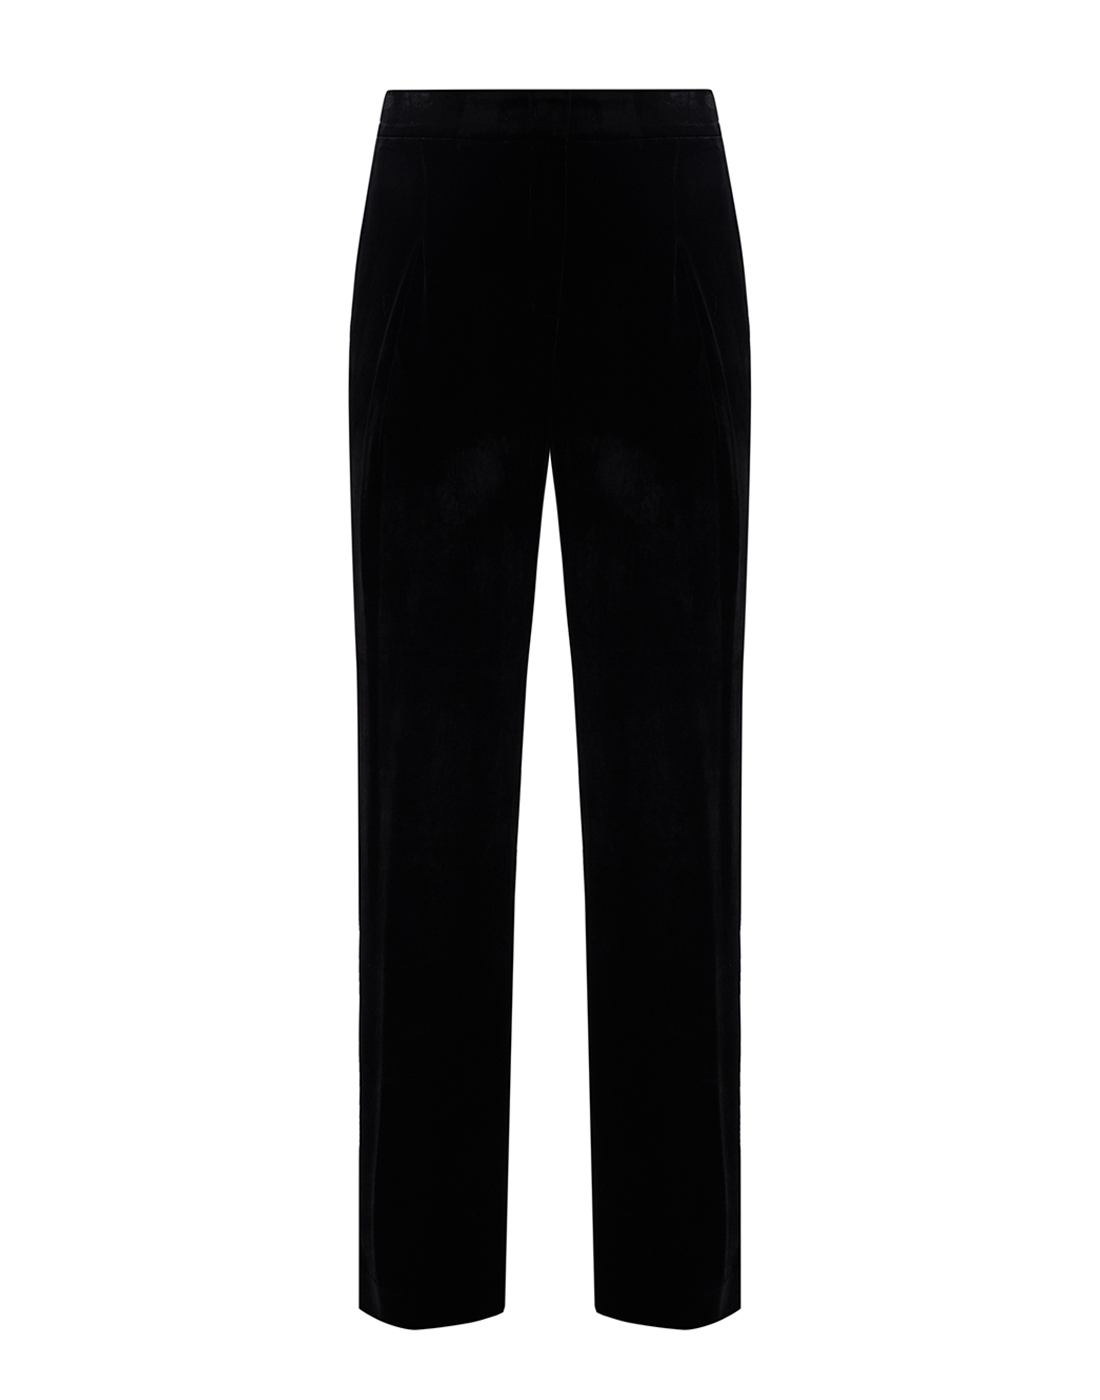 Женские черные брюки Dorothee Schumacher S147901/999-1